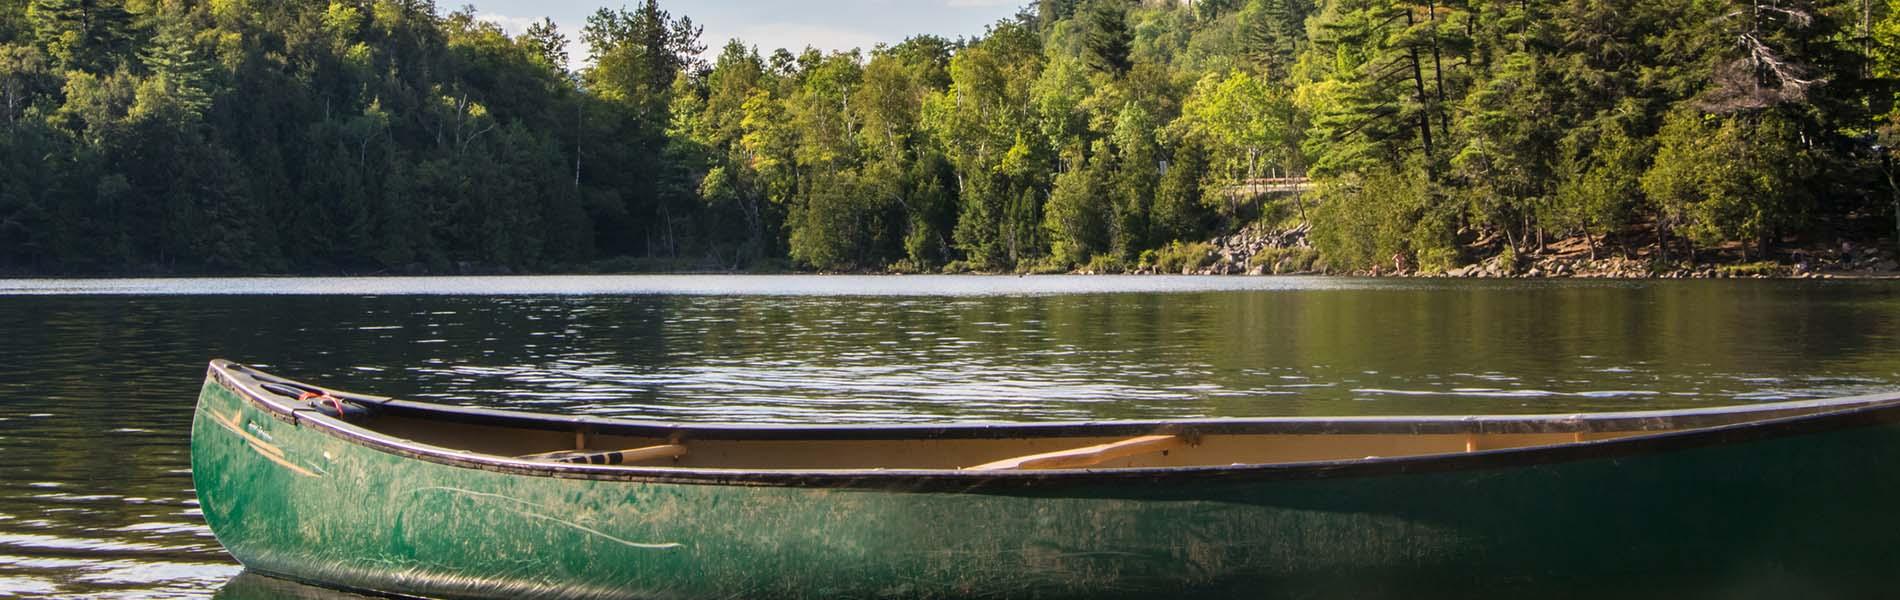 Empty canoe on a lake.